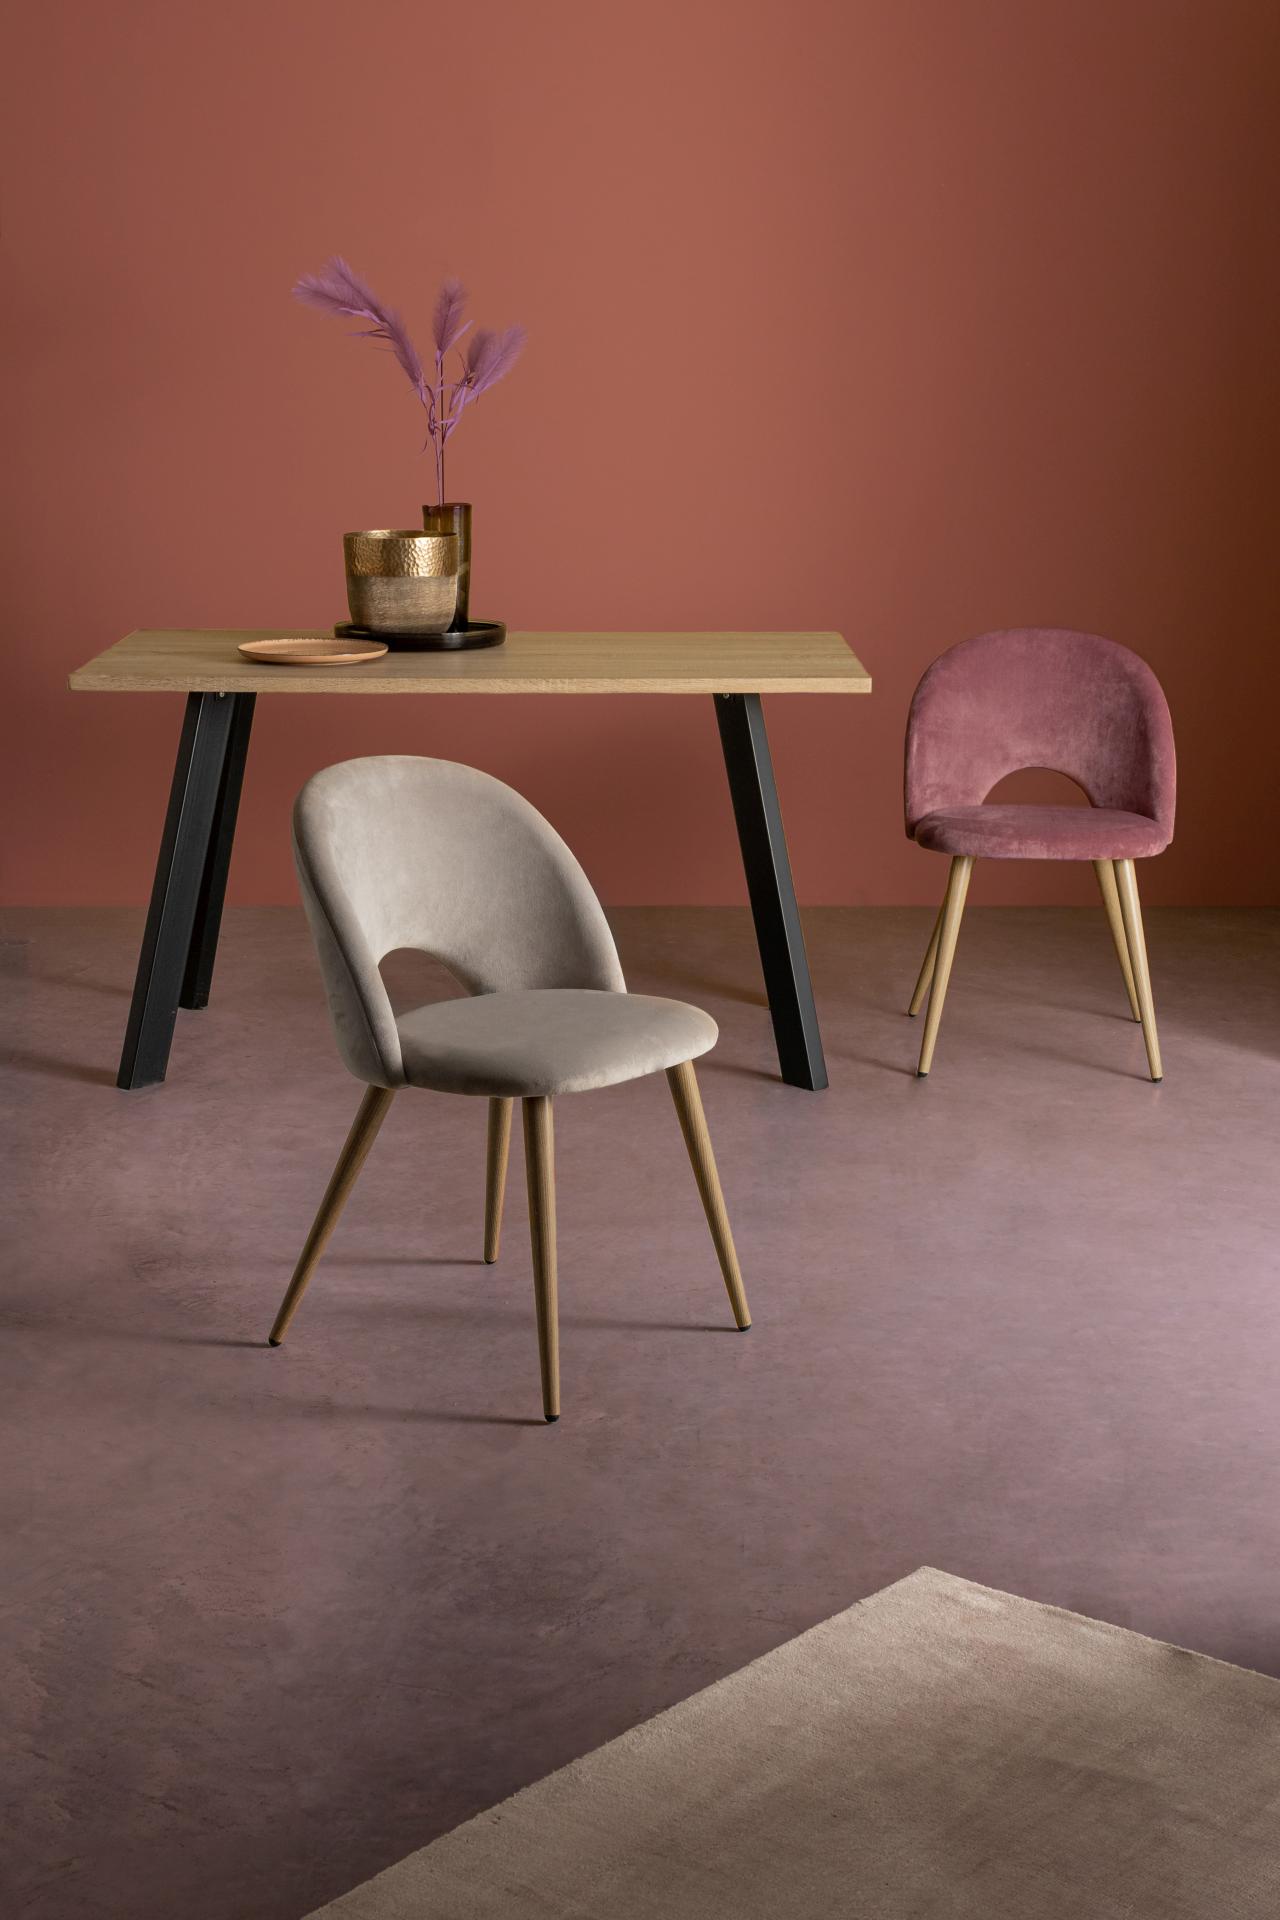 Der Esszimmerstuhl Linzey besitzt einen Samt-Bezug, welcher einen Rosa Farbton besitzt. Das Gestell ist aus Metall und hat eine Holz-Optik. Das Design des Stuhls ist modern. Die Sitzhöhe des Stuhls beträgt 46 cm.